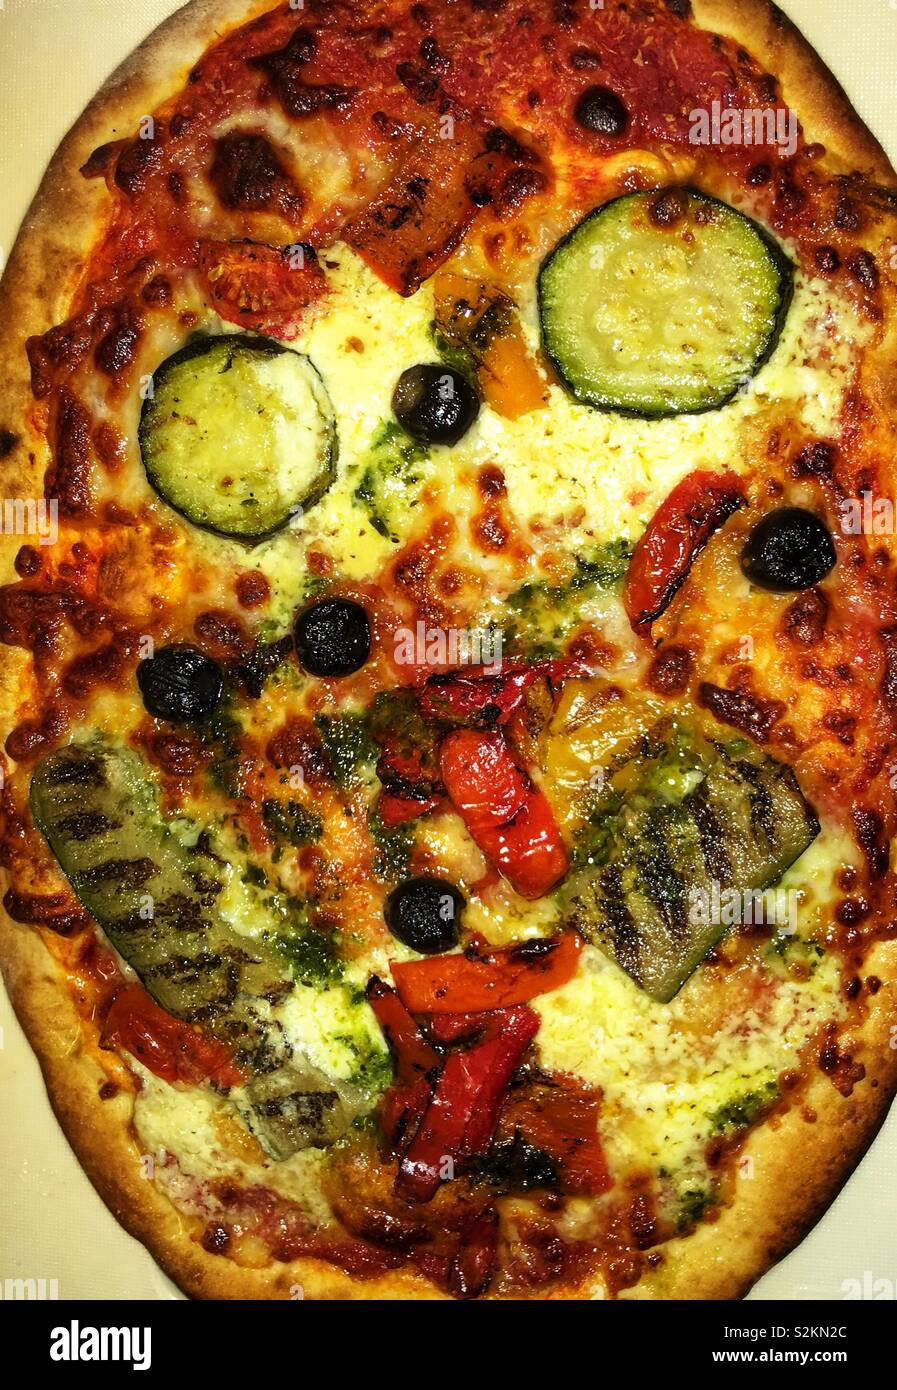 Pizza sorridente. Il cibo immagine raffigurante un fresco pizza cotta che mostra una somiglianza con un volto sorridente. Foto Stock